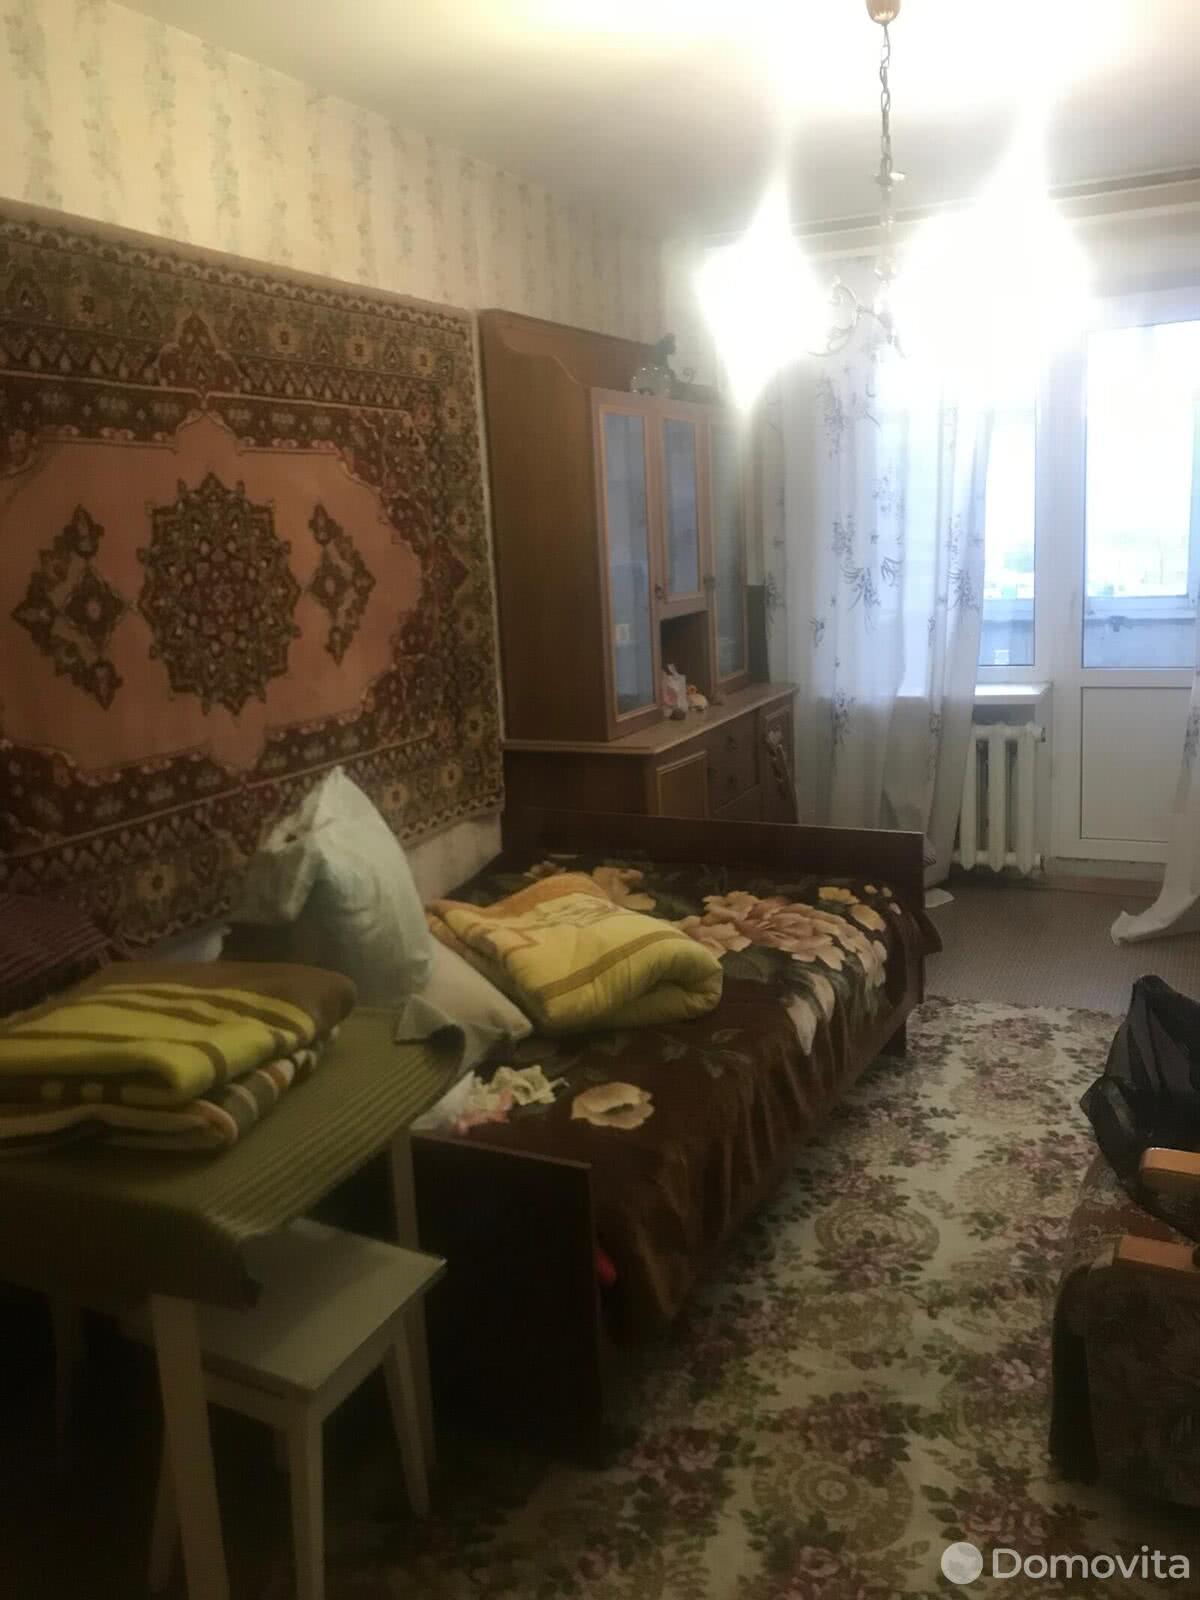 Стоимость продажи квартиры, Могилев, ул. Мовчанского, д. 34